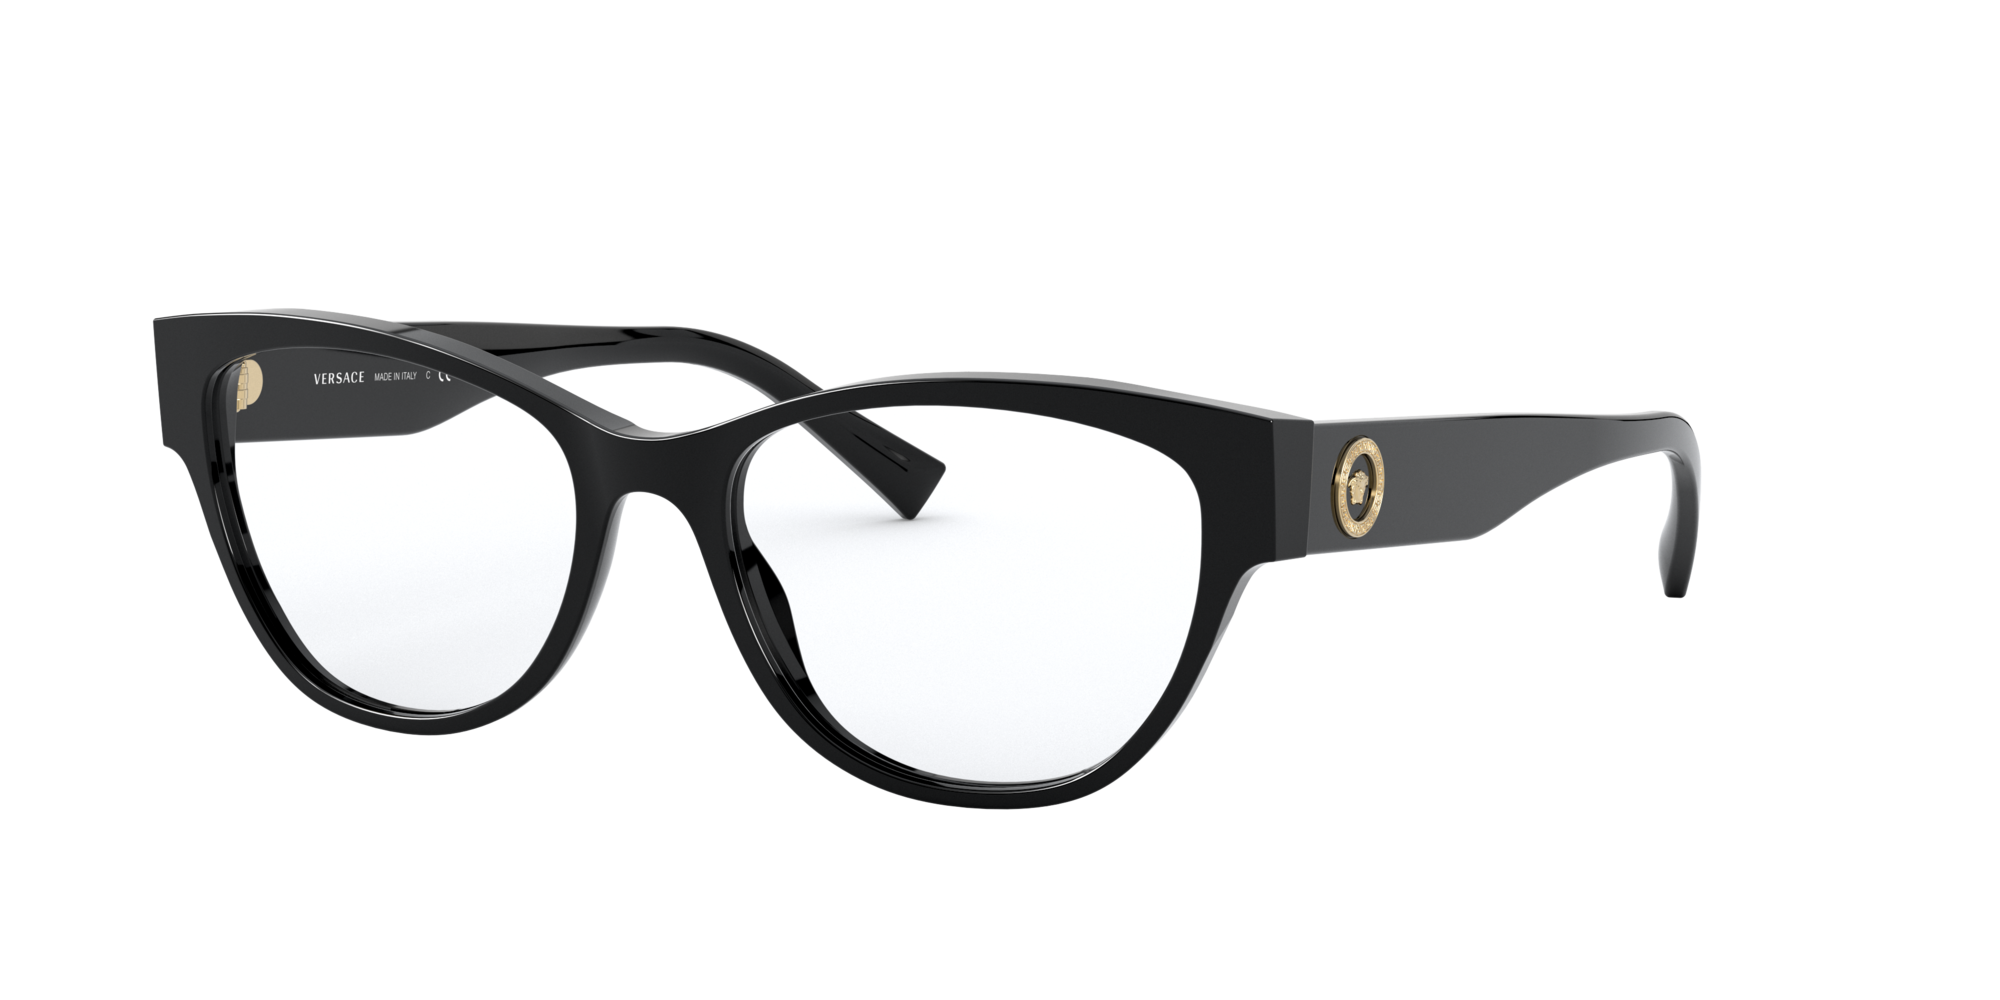 versace eyeglasses 2018, OFF 77%,Buy!